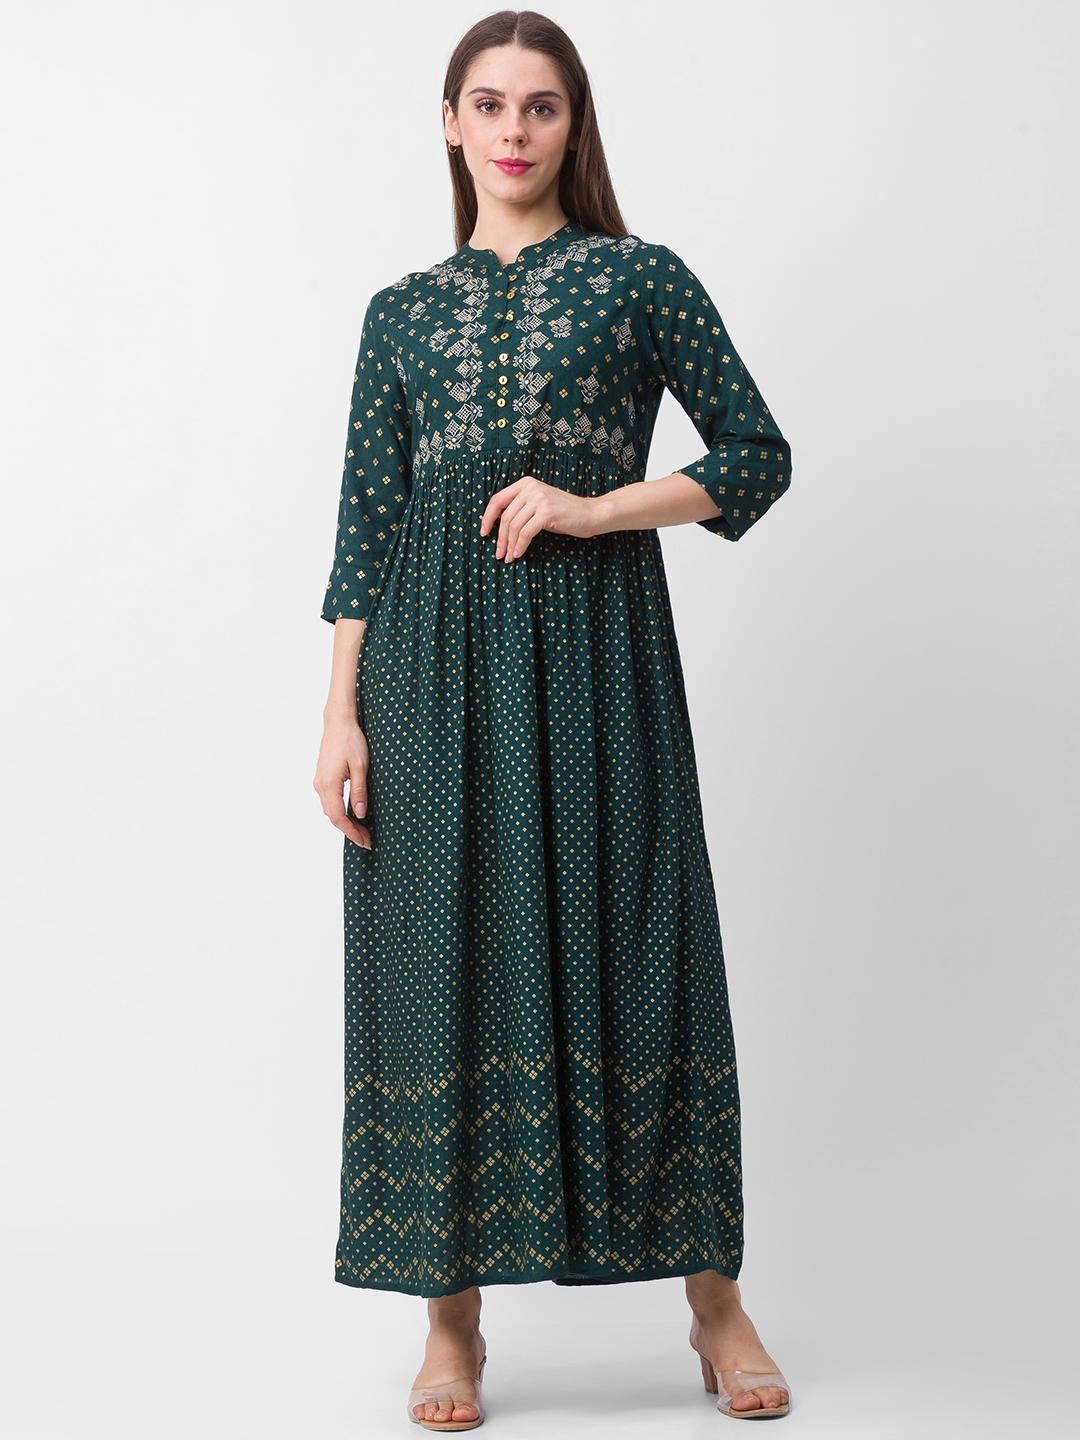 globus | Globus Green Printed Dress